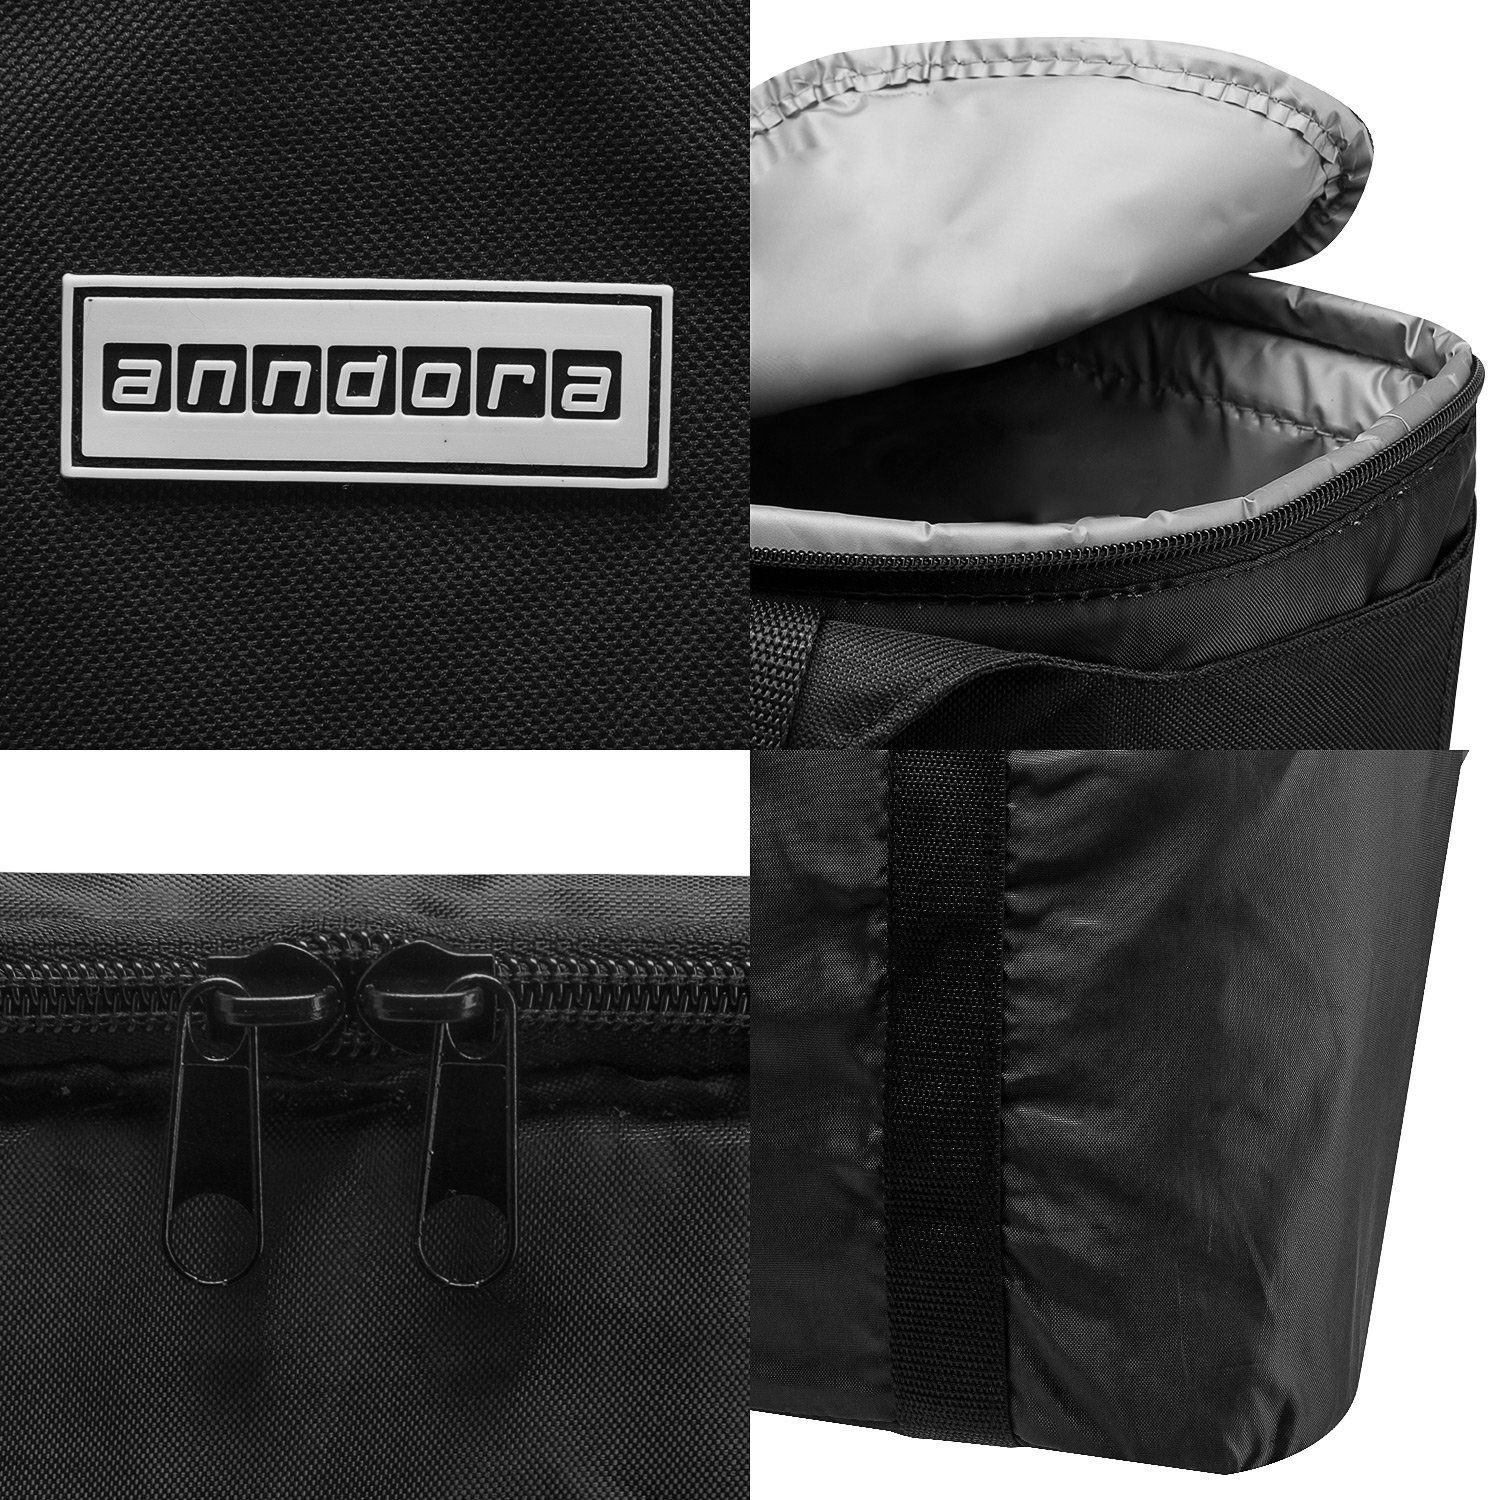 anndora Picknickkorb Kühltasche Einkaufstasche Design Kühlakku - Auswahl 2 zur 1 in + schwarz 